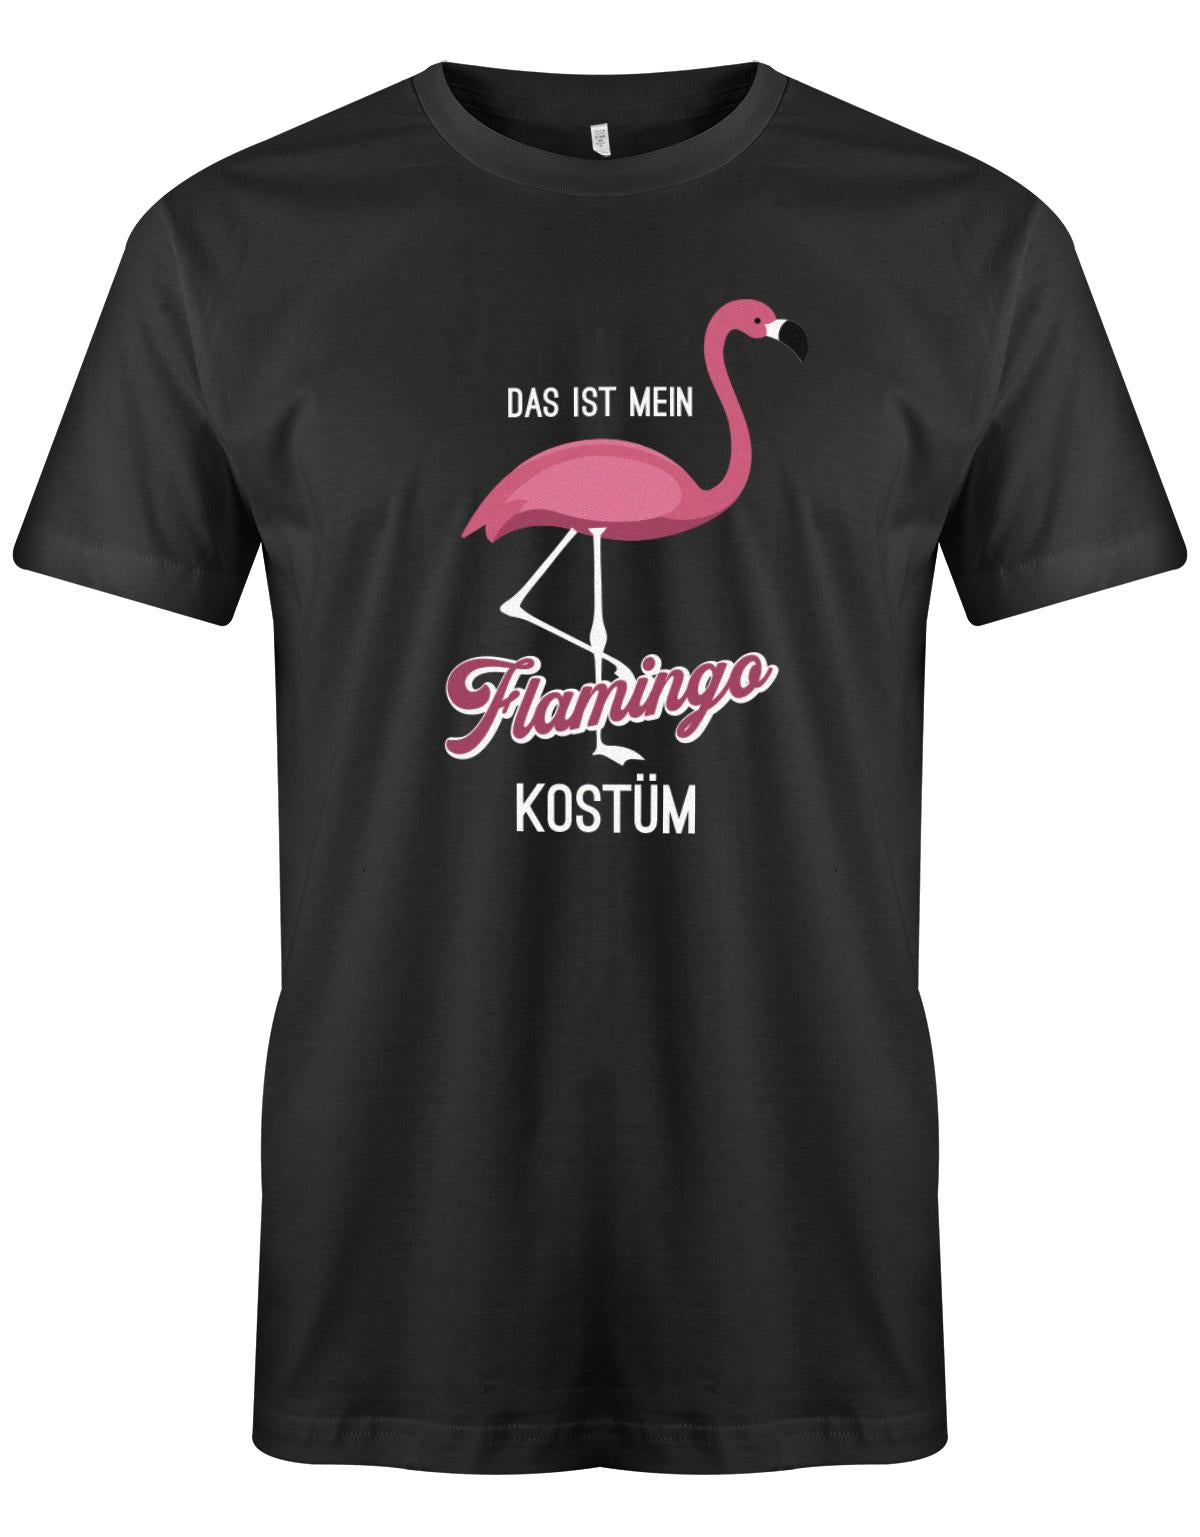 Das-ist-mein-Flamingo-Kost-m-Fasching-Karneval-Verkleidung-Shirt-Herren-SChwarz